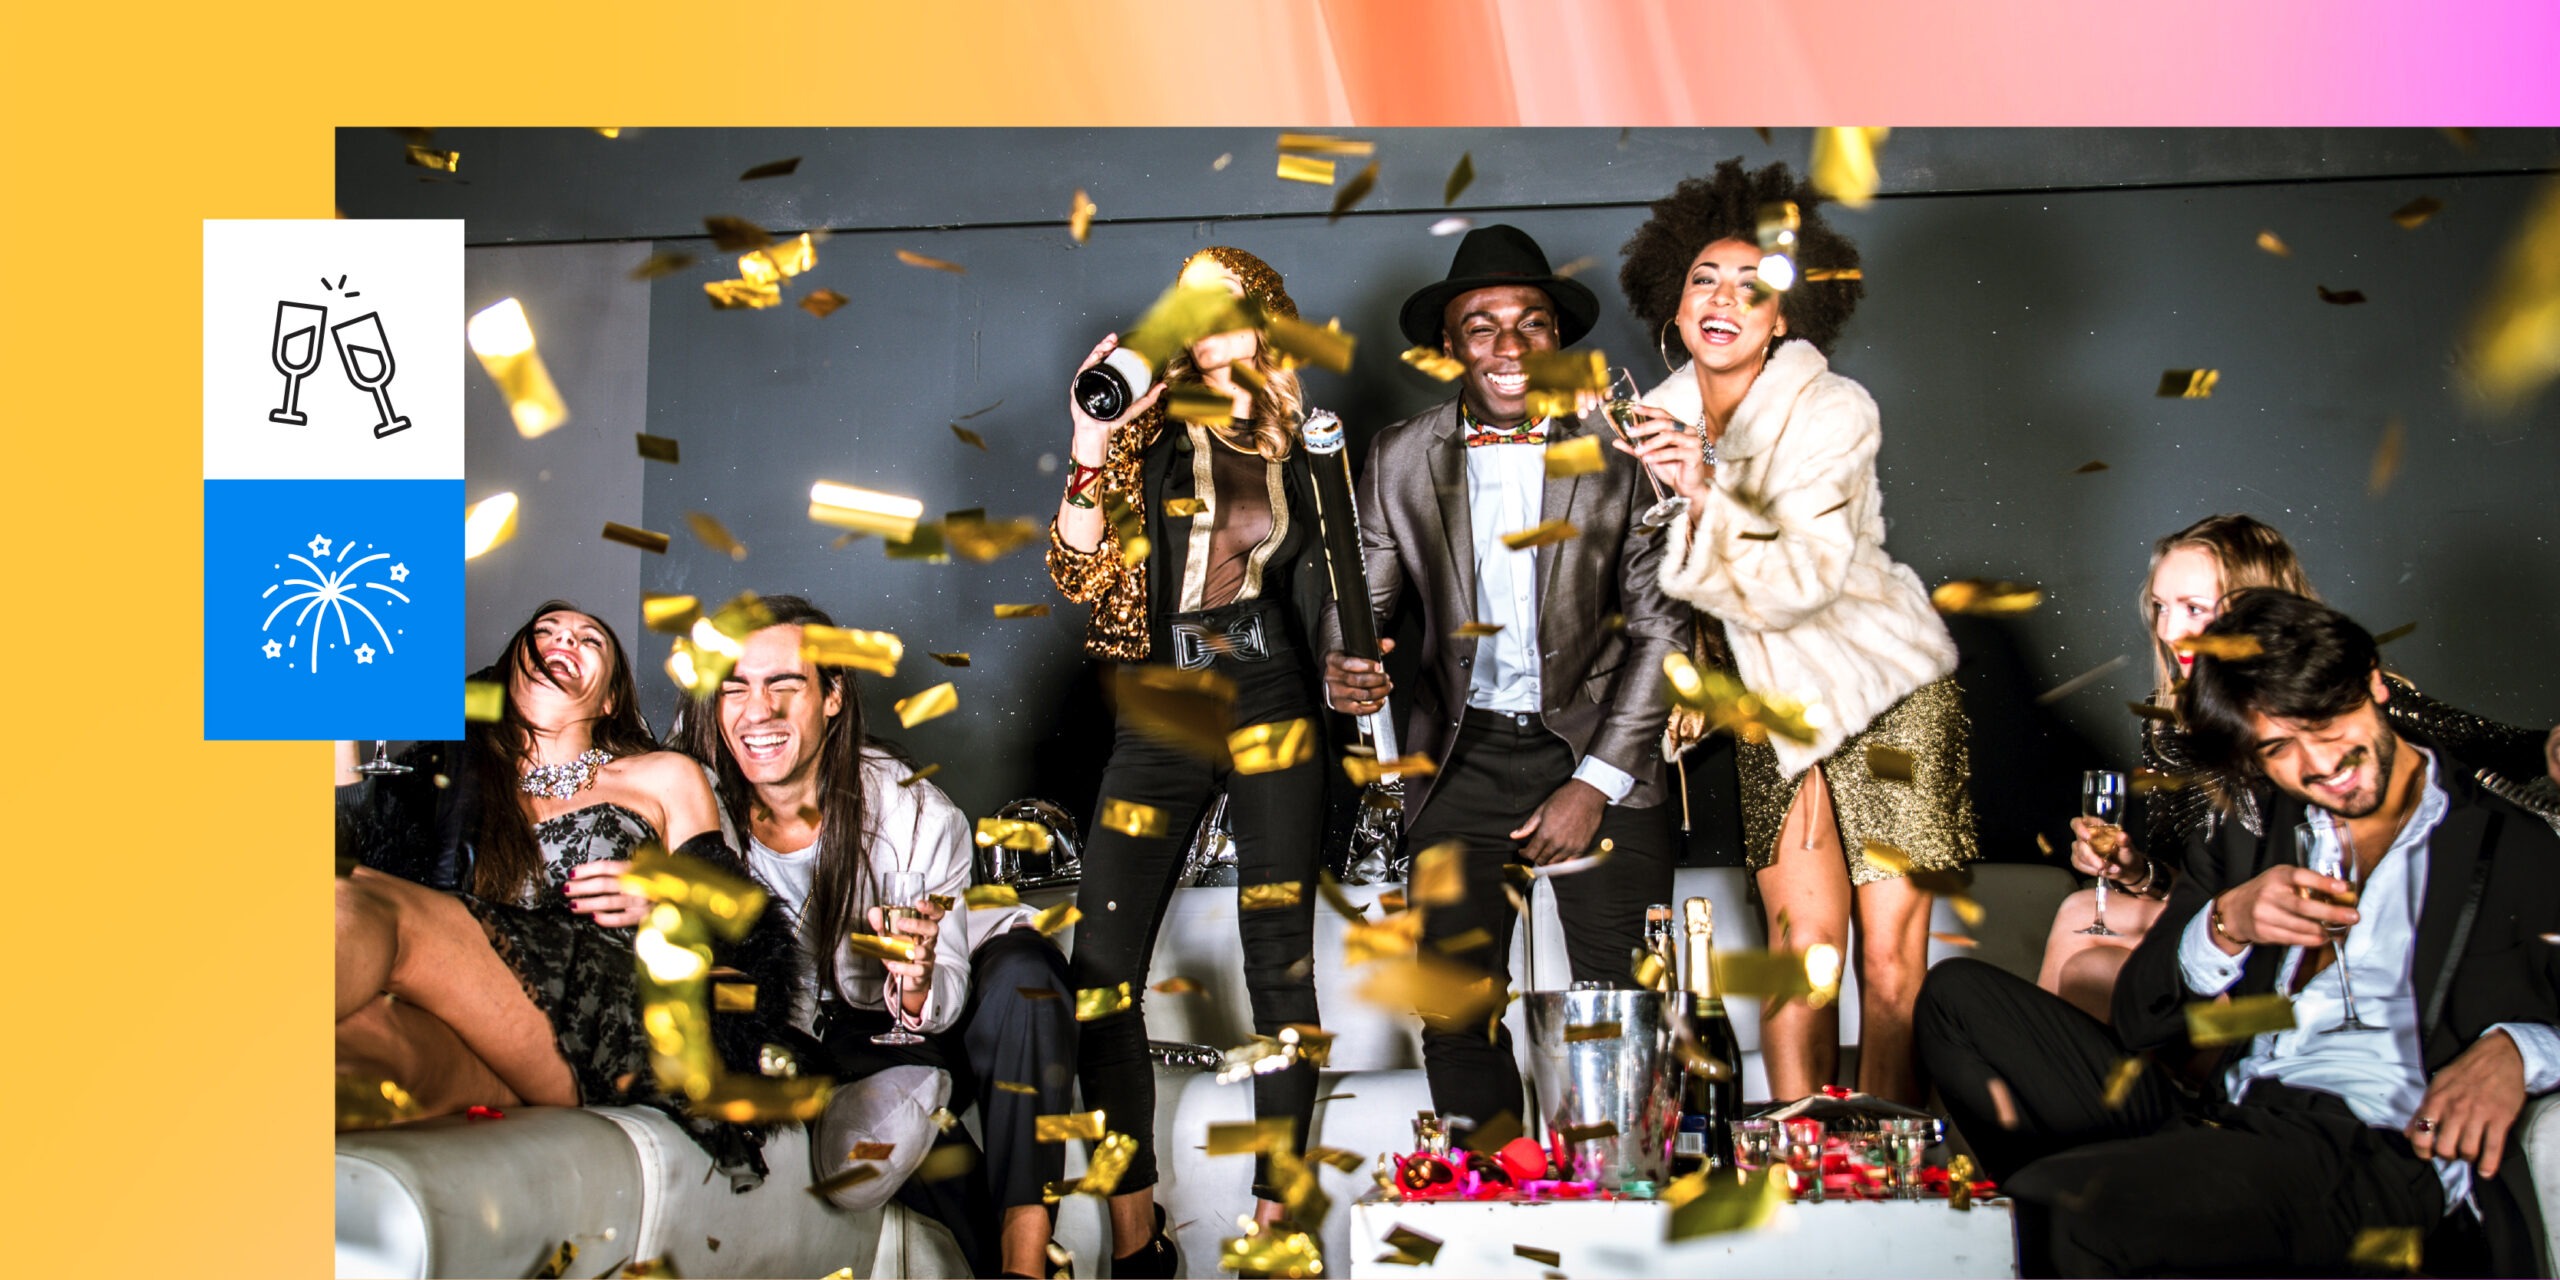 Na imagem, um grupo de amigos celebra a virada do ano em uma festa de réveillon em meio a uma chuva de confetes dourados. A foto ilustra o trabalho de organização de eventos de um produtor.